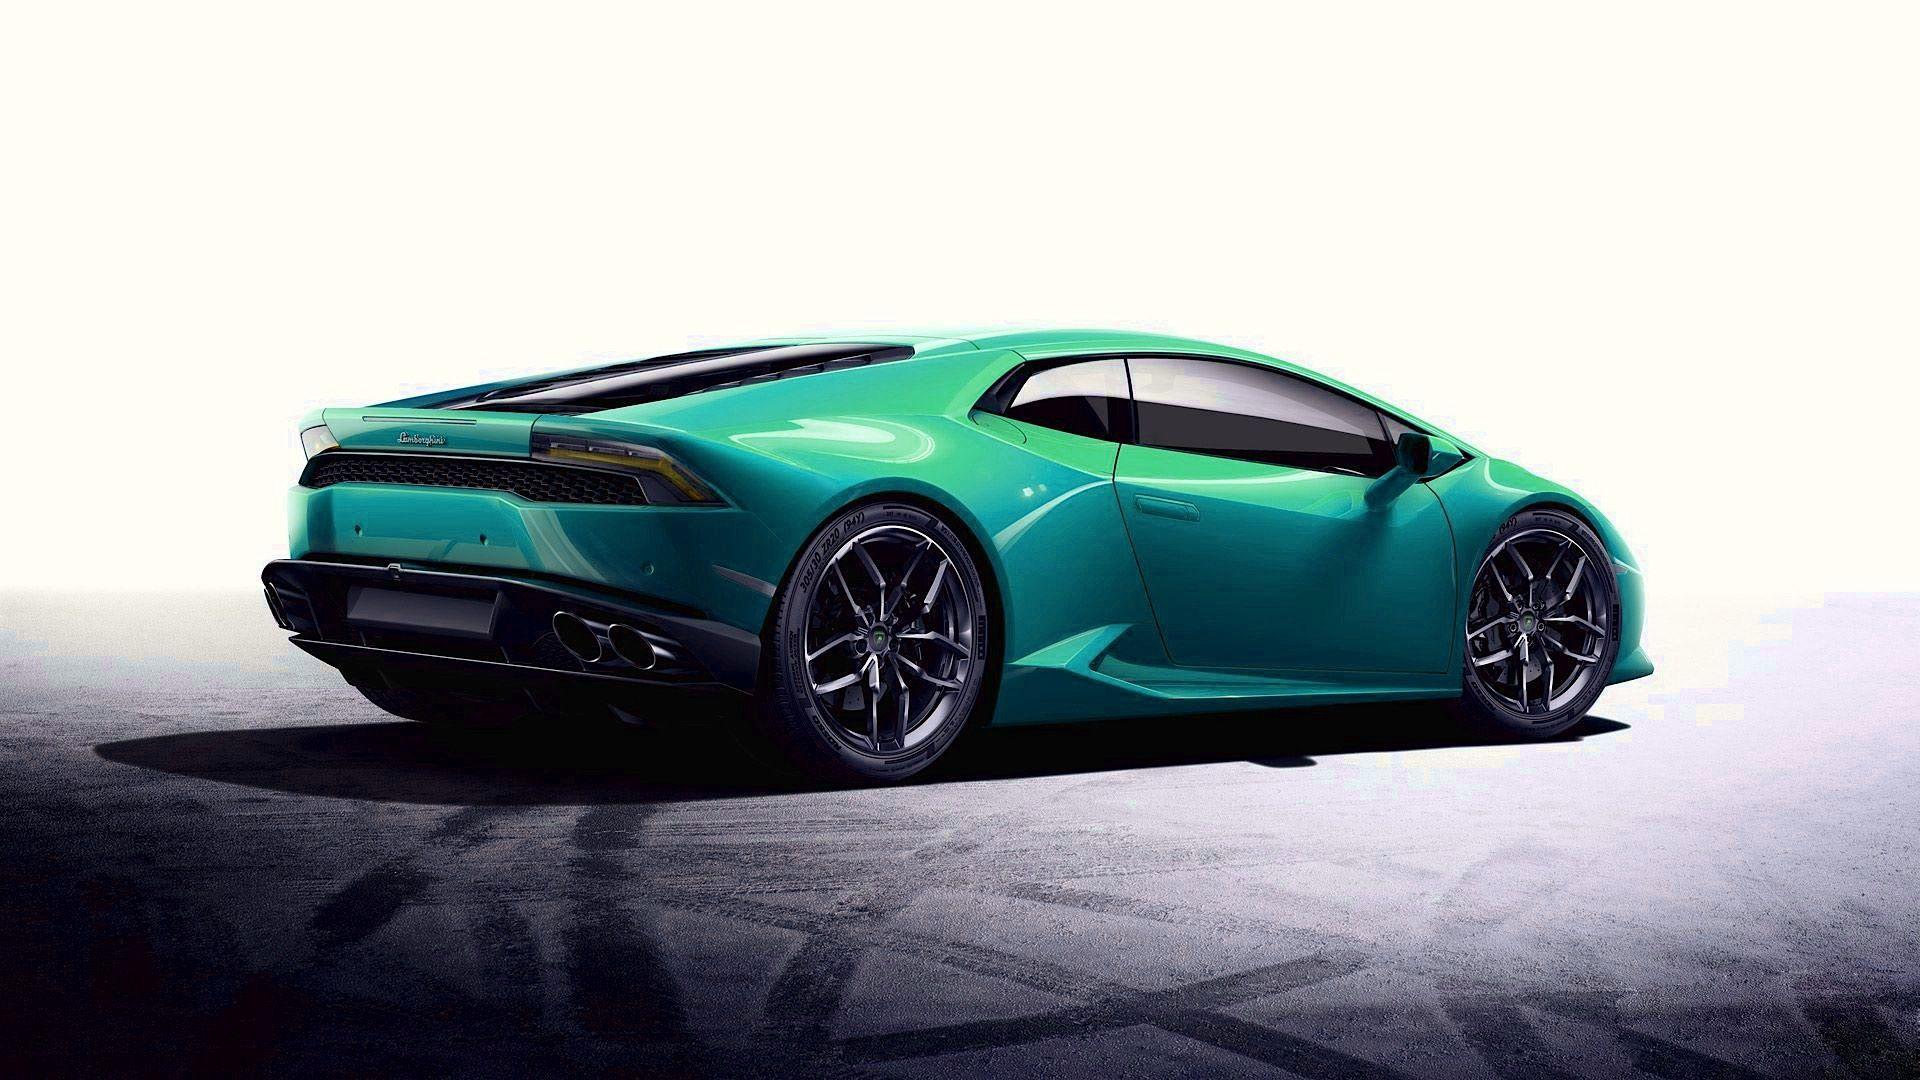 Lamborghini Huracan Wallpaper Hd Download